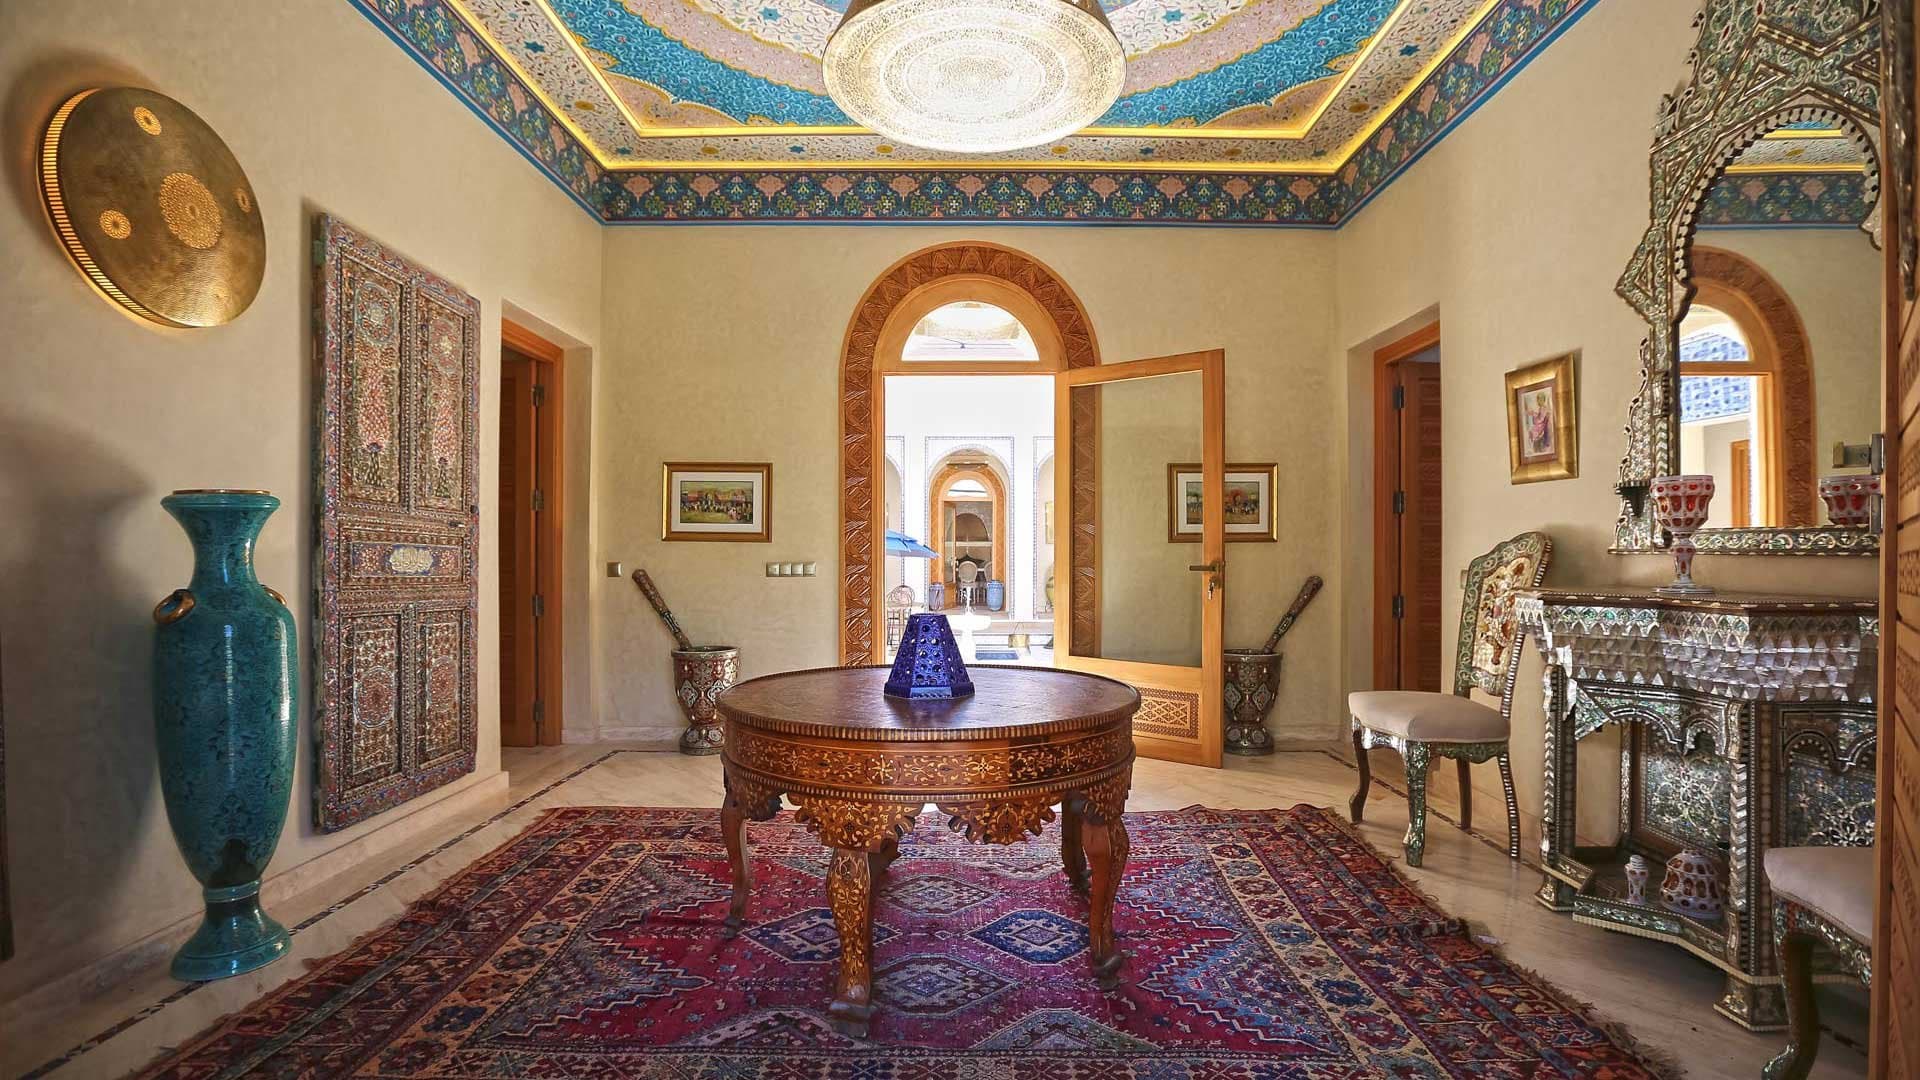 8 Bedroom Villa For Sale Marrakech Lp08726 10b1f256d89db000.jpg